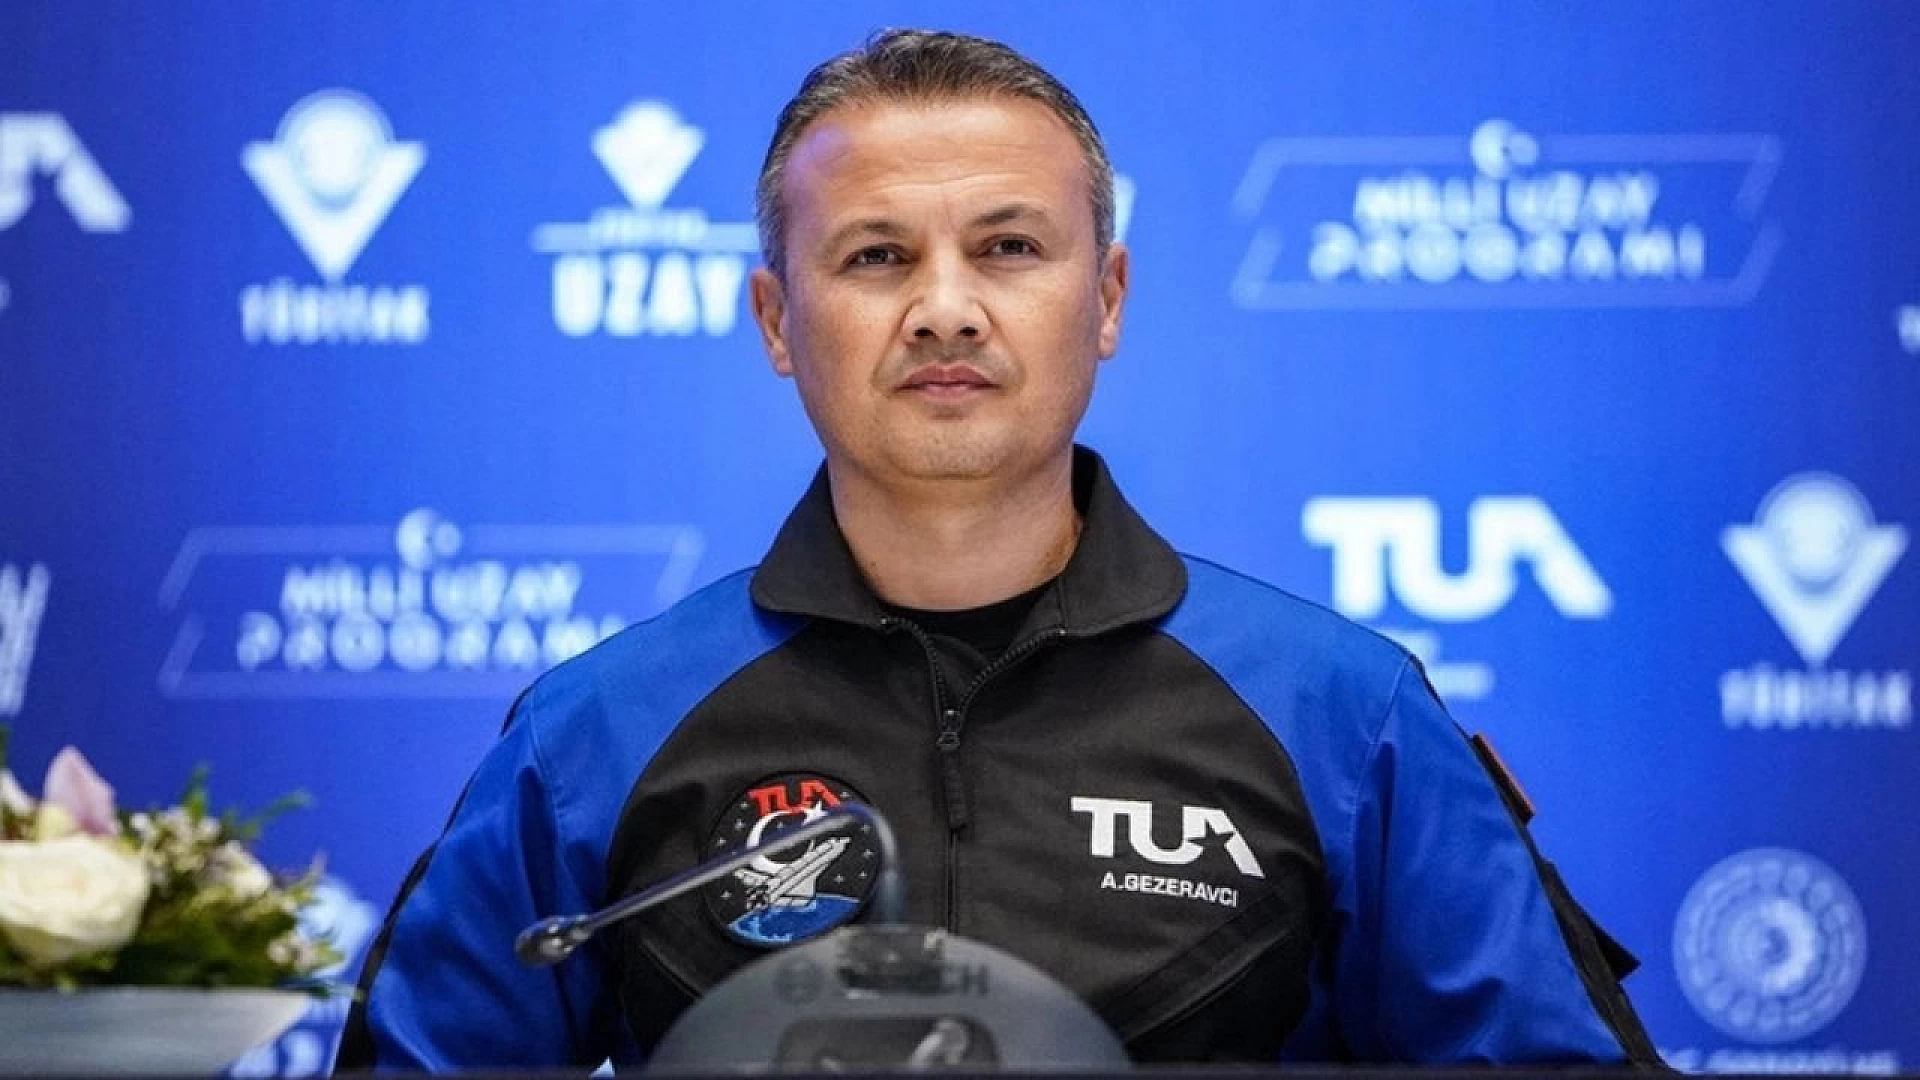 İlk Türk astronot Alper Gezeravcı'ya yeni görev